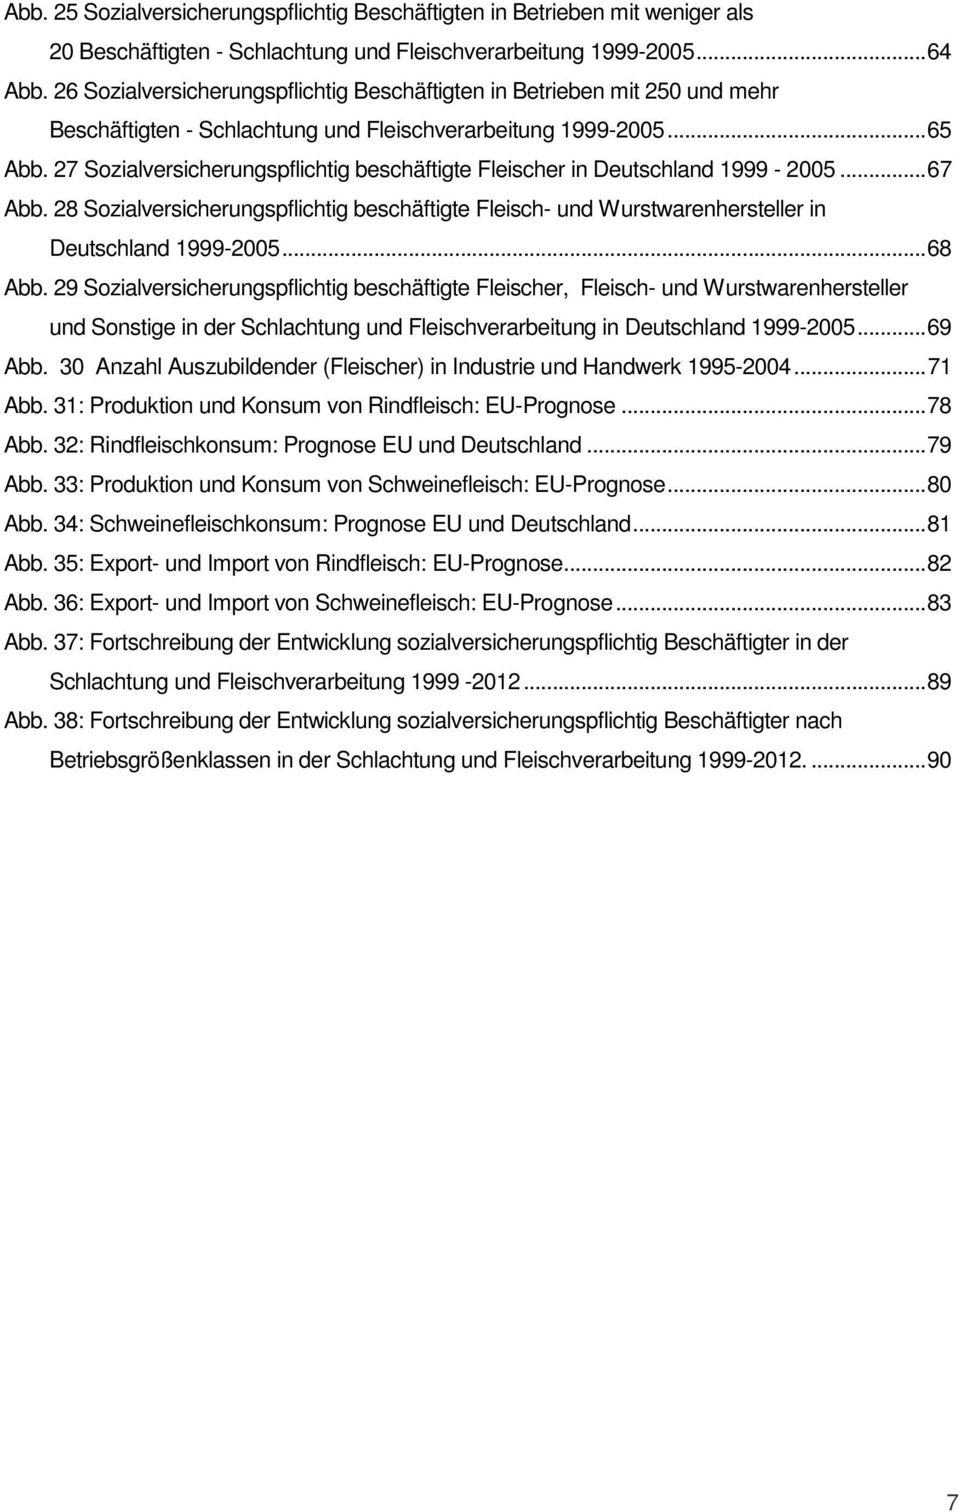 27 Sozialversicherungspflichtig beschäftigte Fleischer in Deutschland 1999-2005...67 Abb. 28 Sozialversicherungspflichtig beschäftigte Fleisch- und Wurstwarenhersteller in Deutschland 1999-2005.